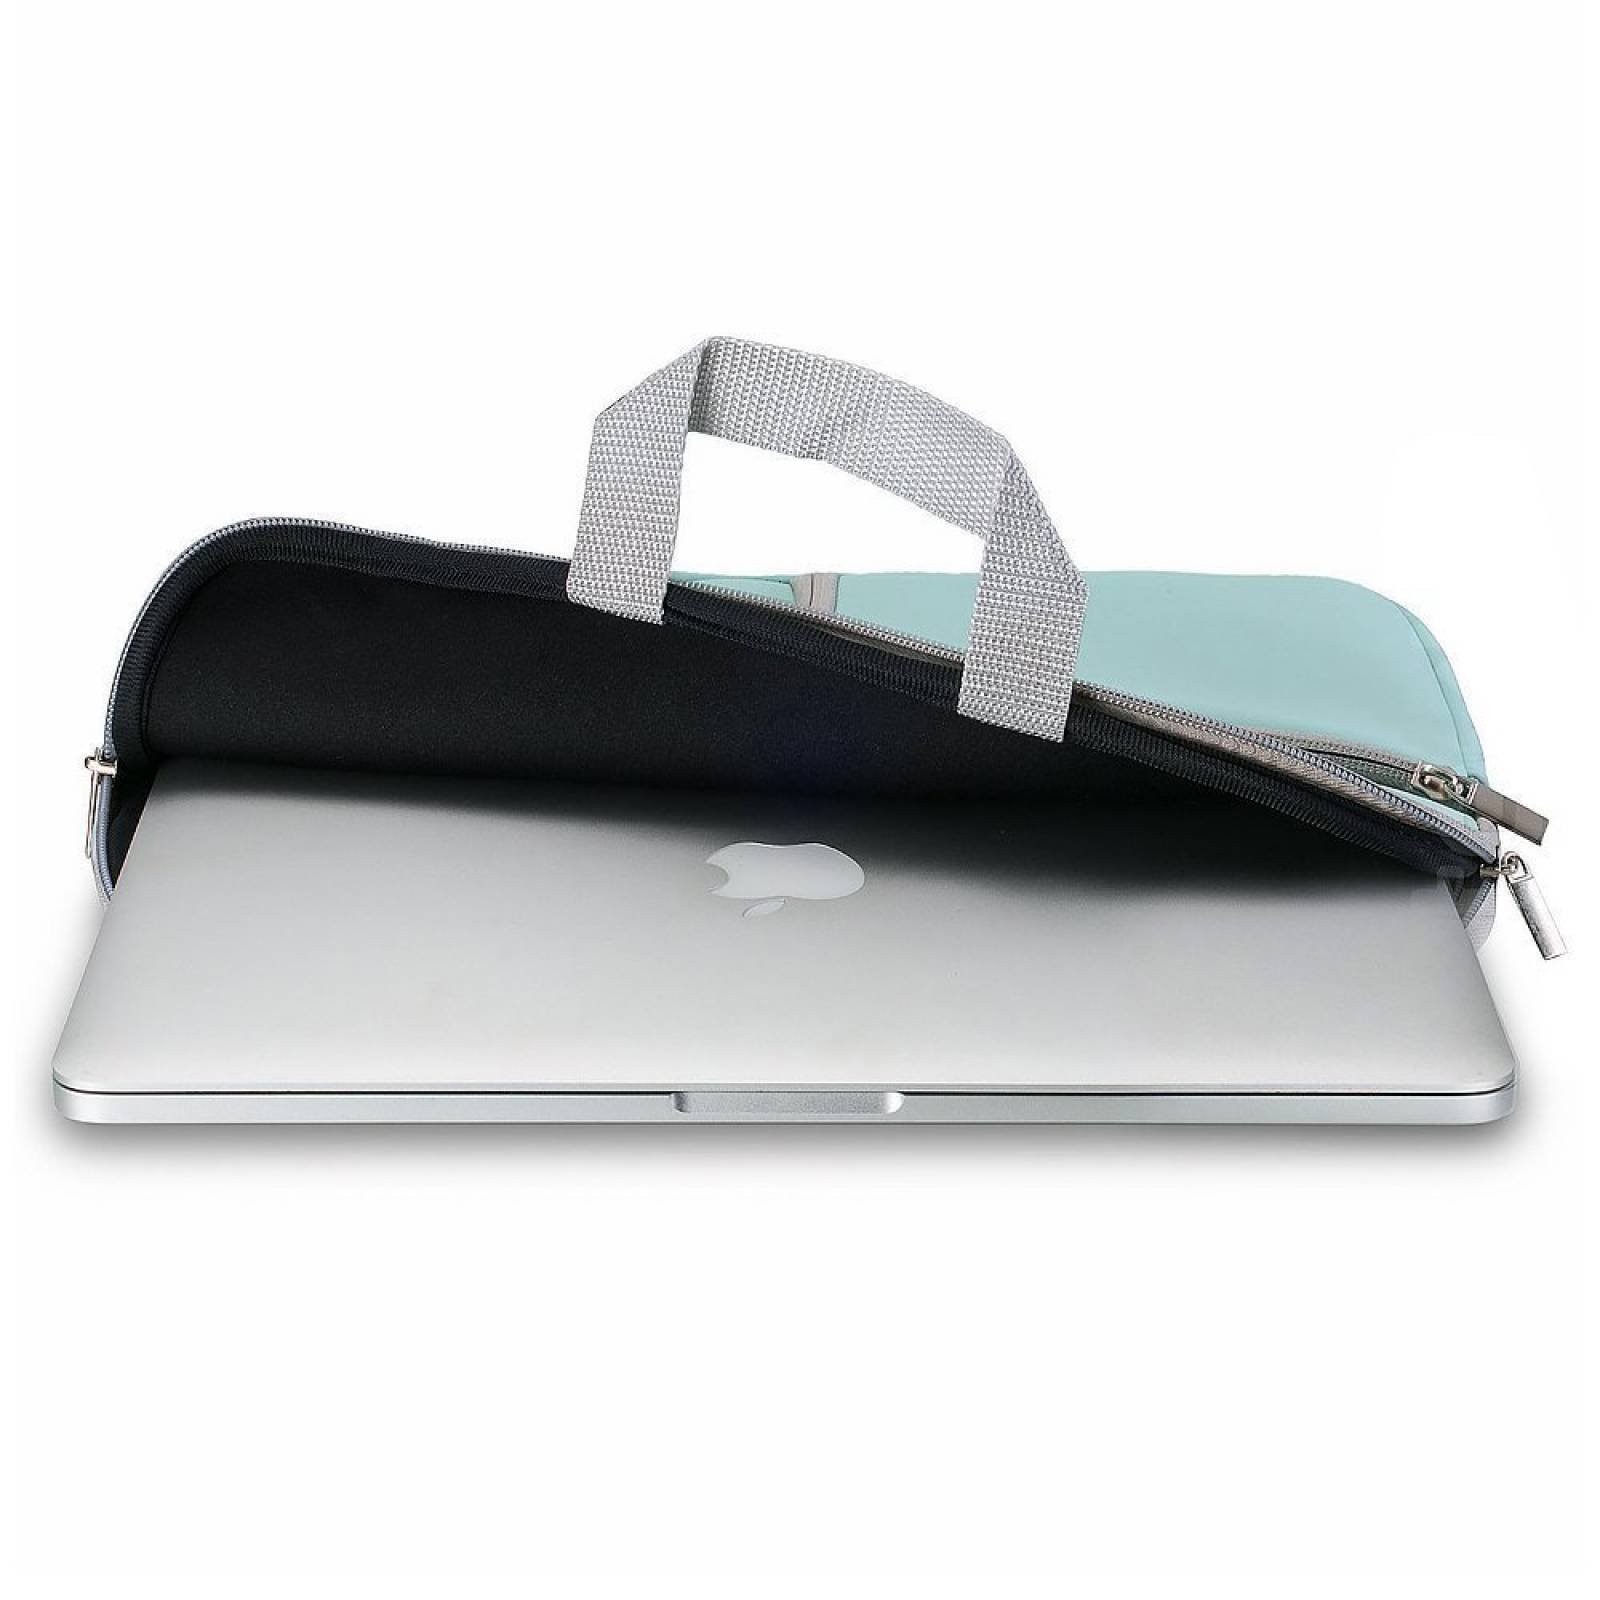 MacBook Air 13 bolsa viaje, funda funda macbook pro 13 -Aqua